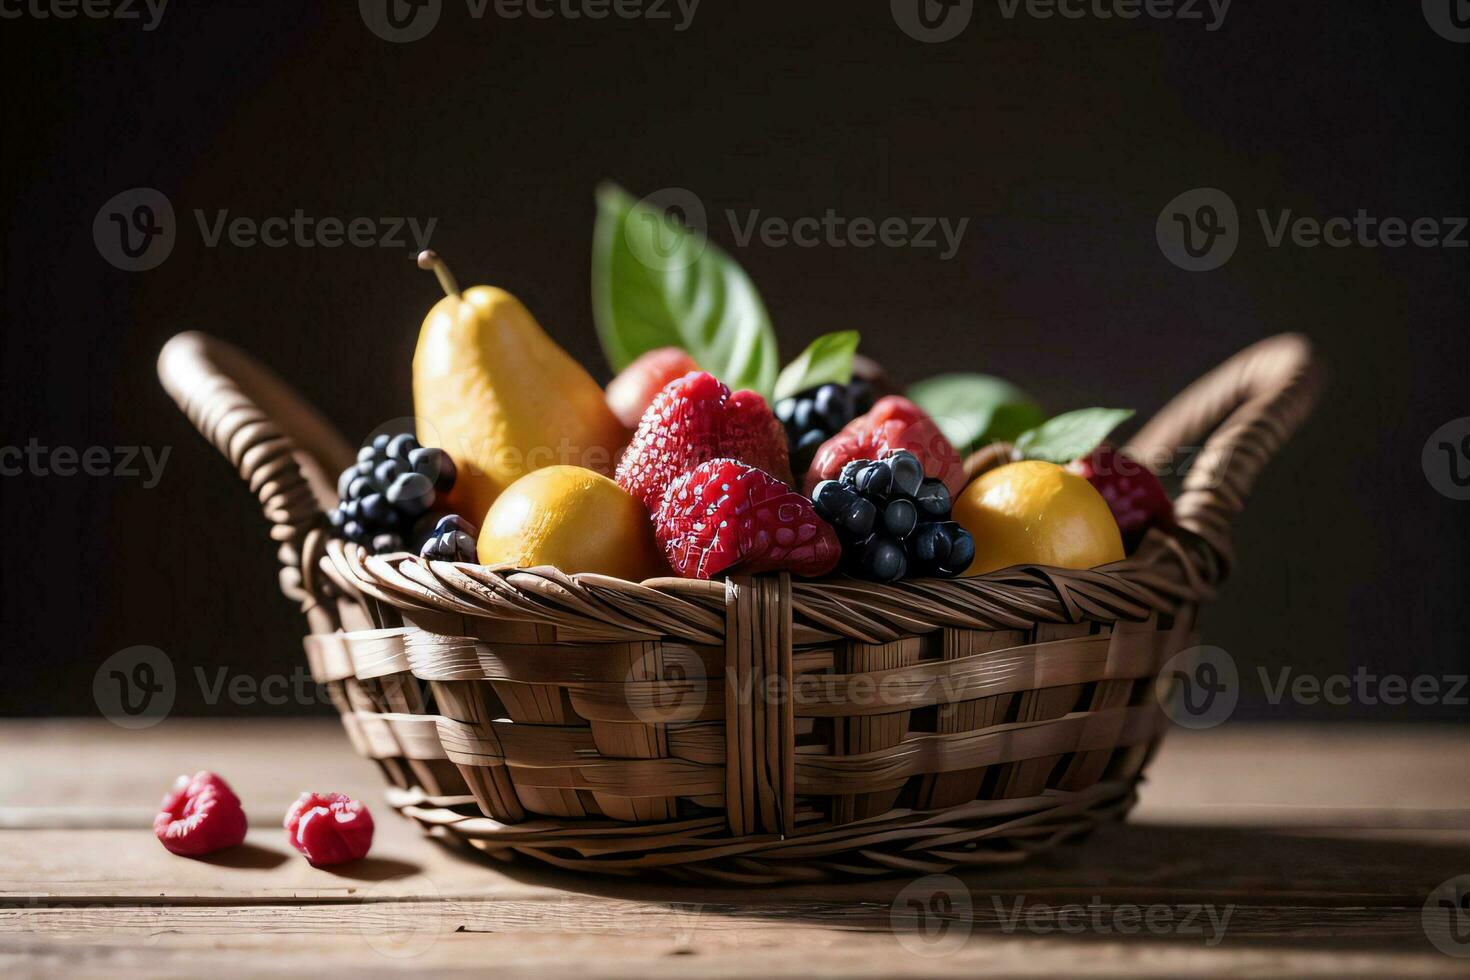 estúdio tiro do a cesta com bagas e frutas em a mesa foto